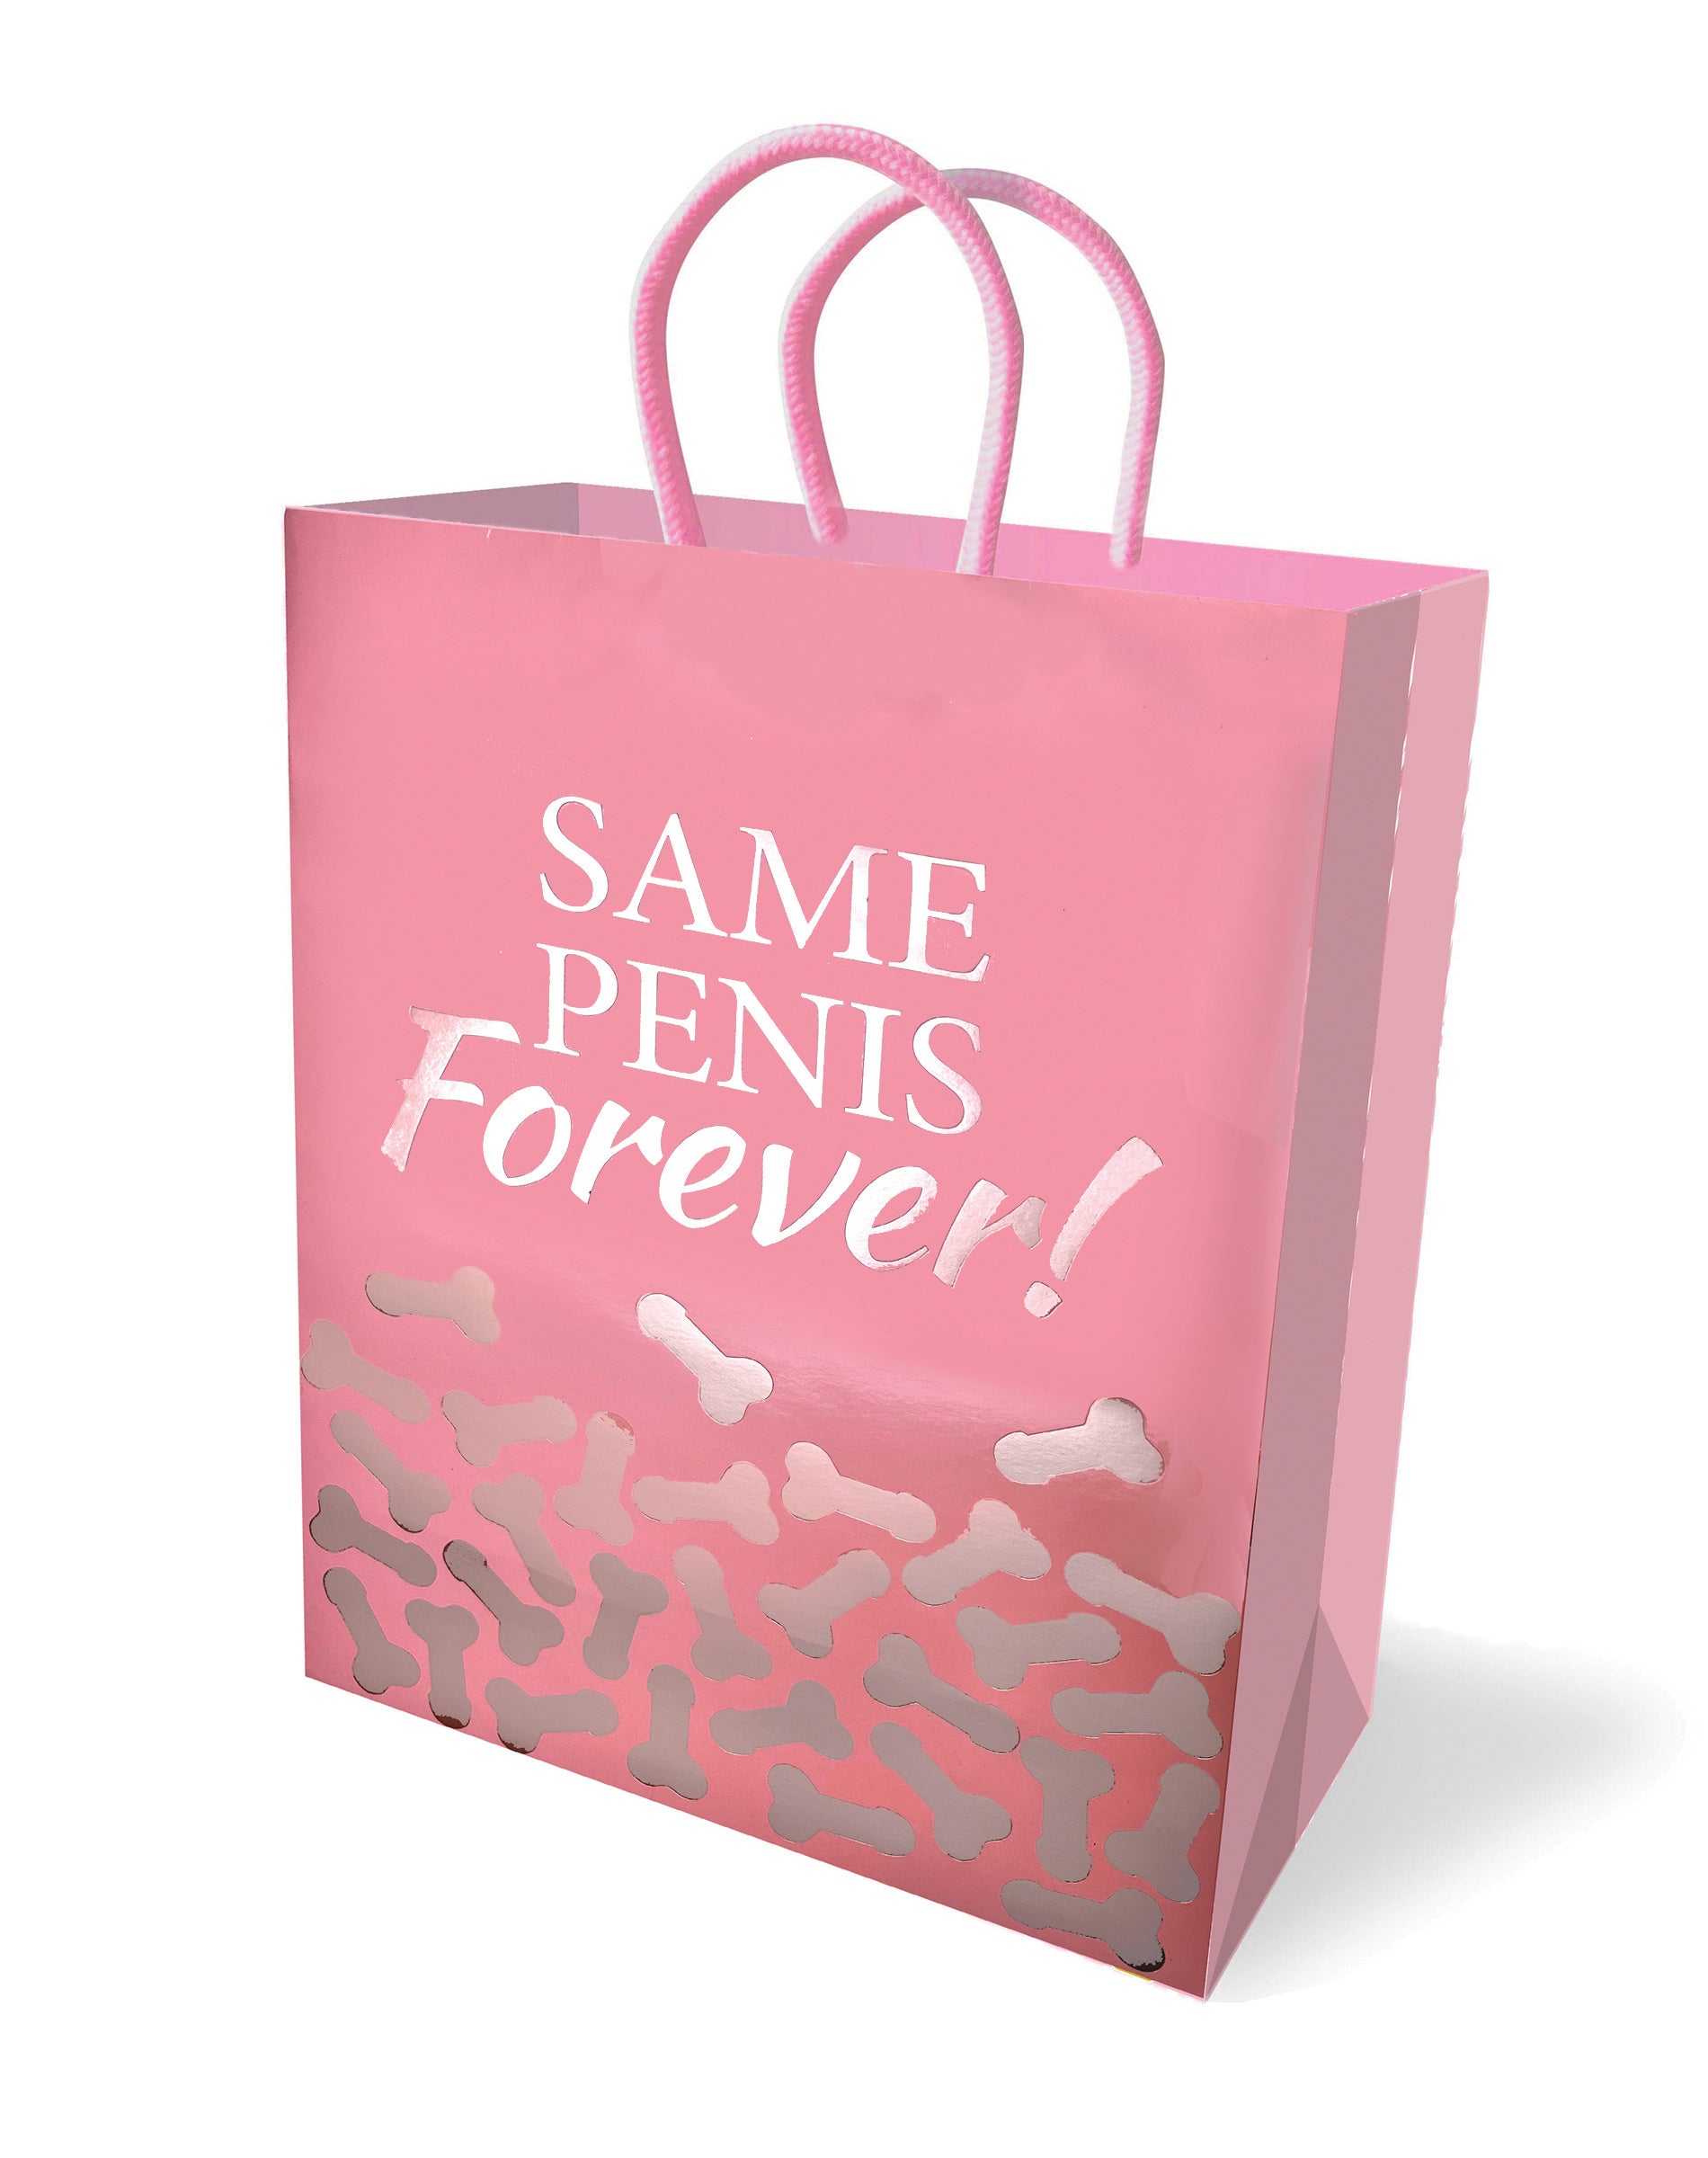 Same Penis Forever - Gift Bag-1